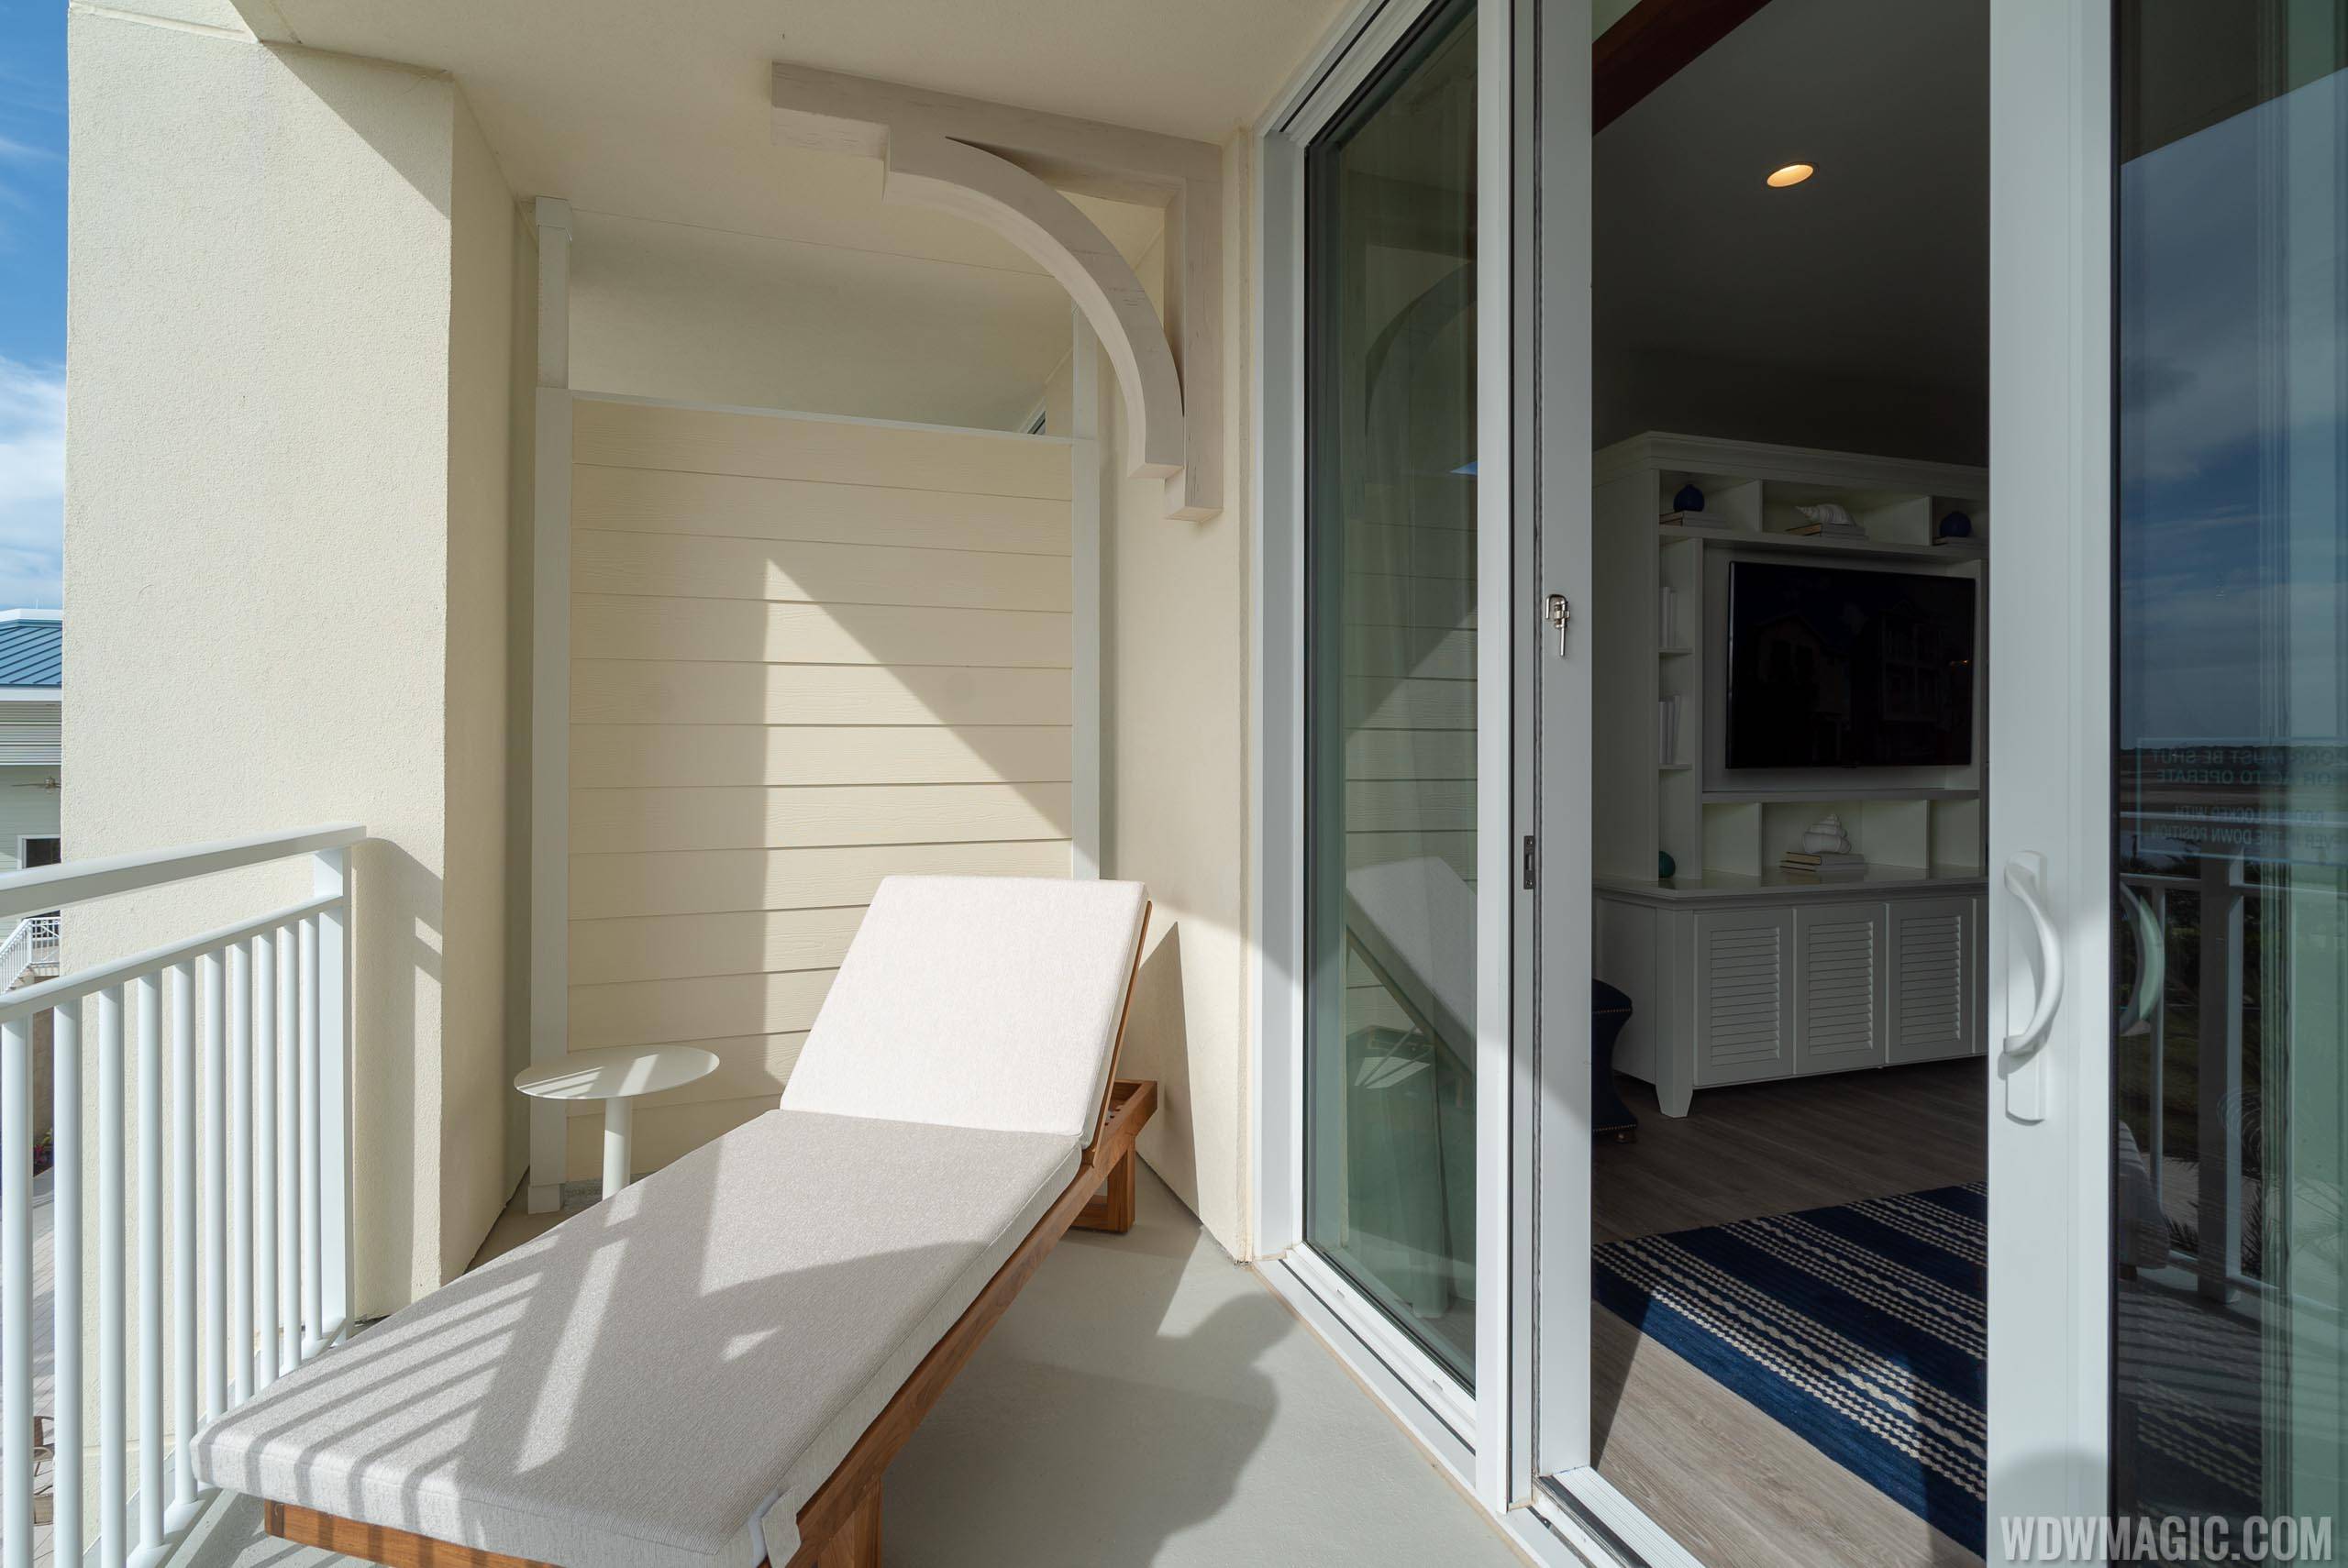 Margaritaville Resort Orlando - 1 Bedroom Suite balcony